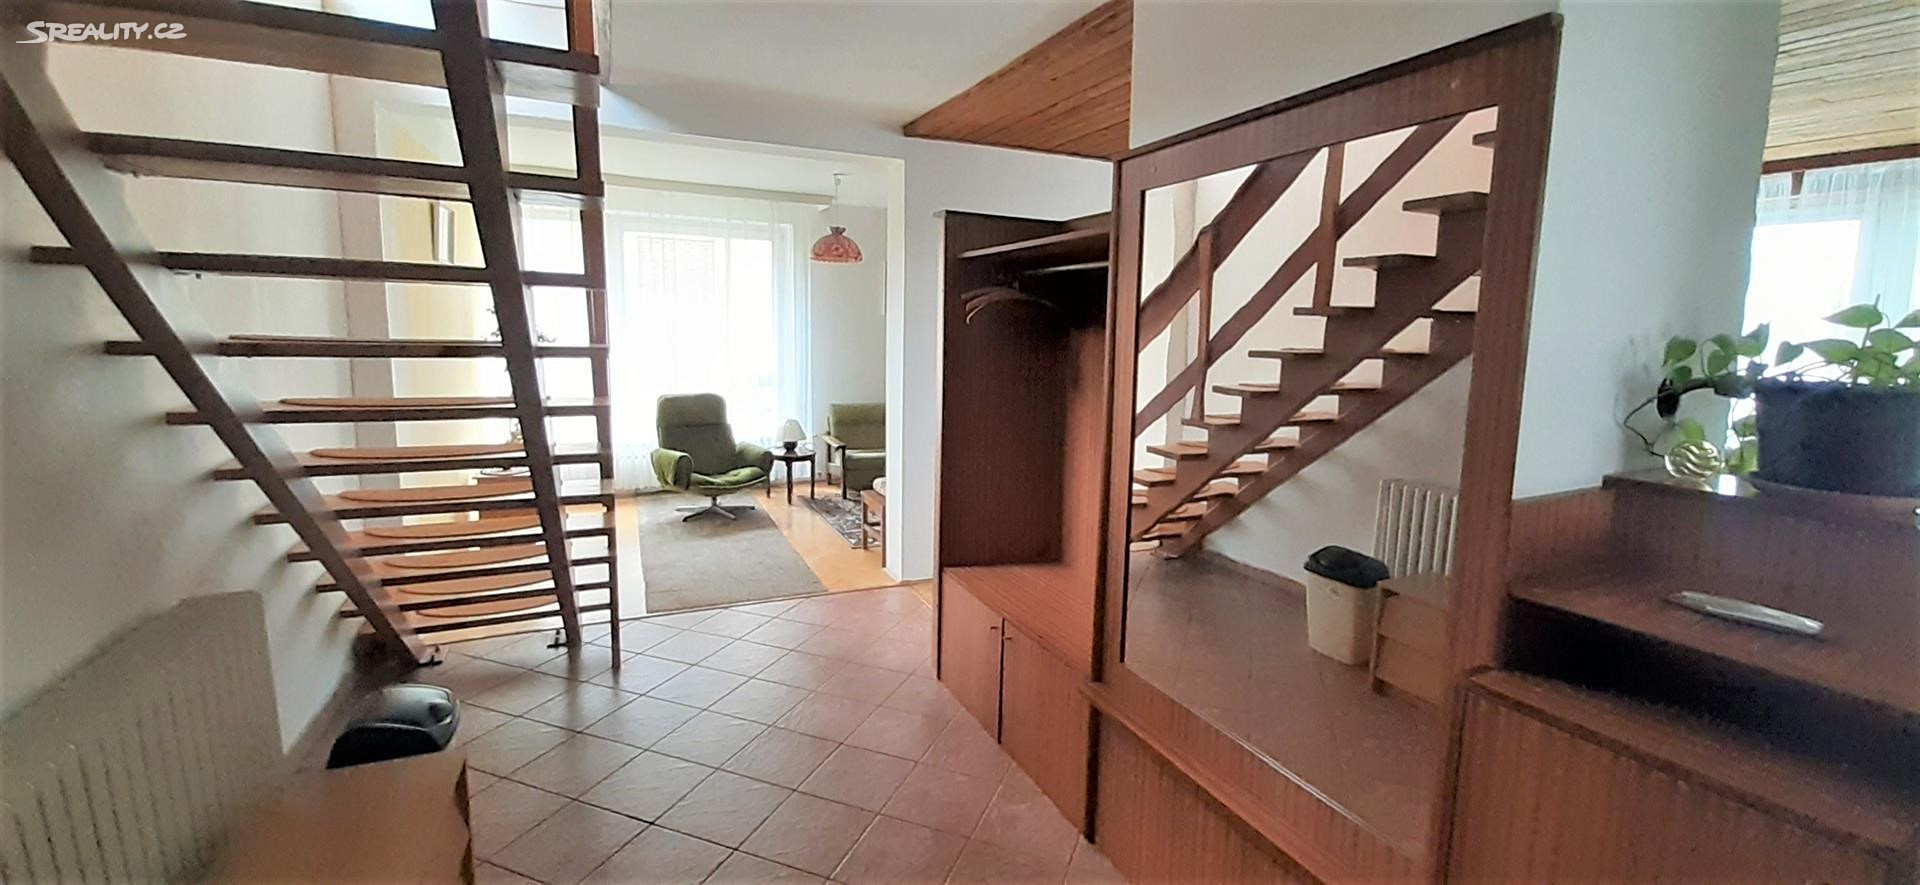 Pronájem bytu 4+1 136 m² (Mezonet), Nad pískovnou, Praha 4 - Krč